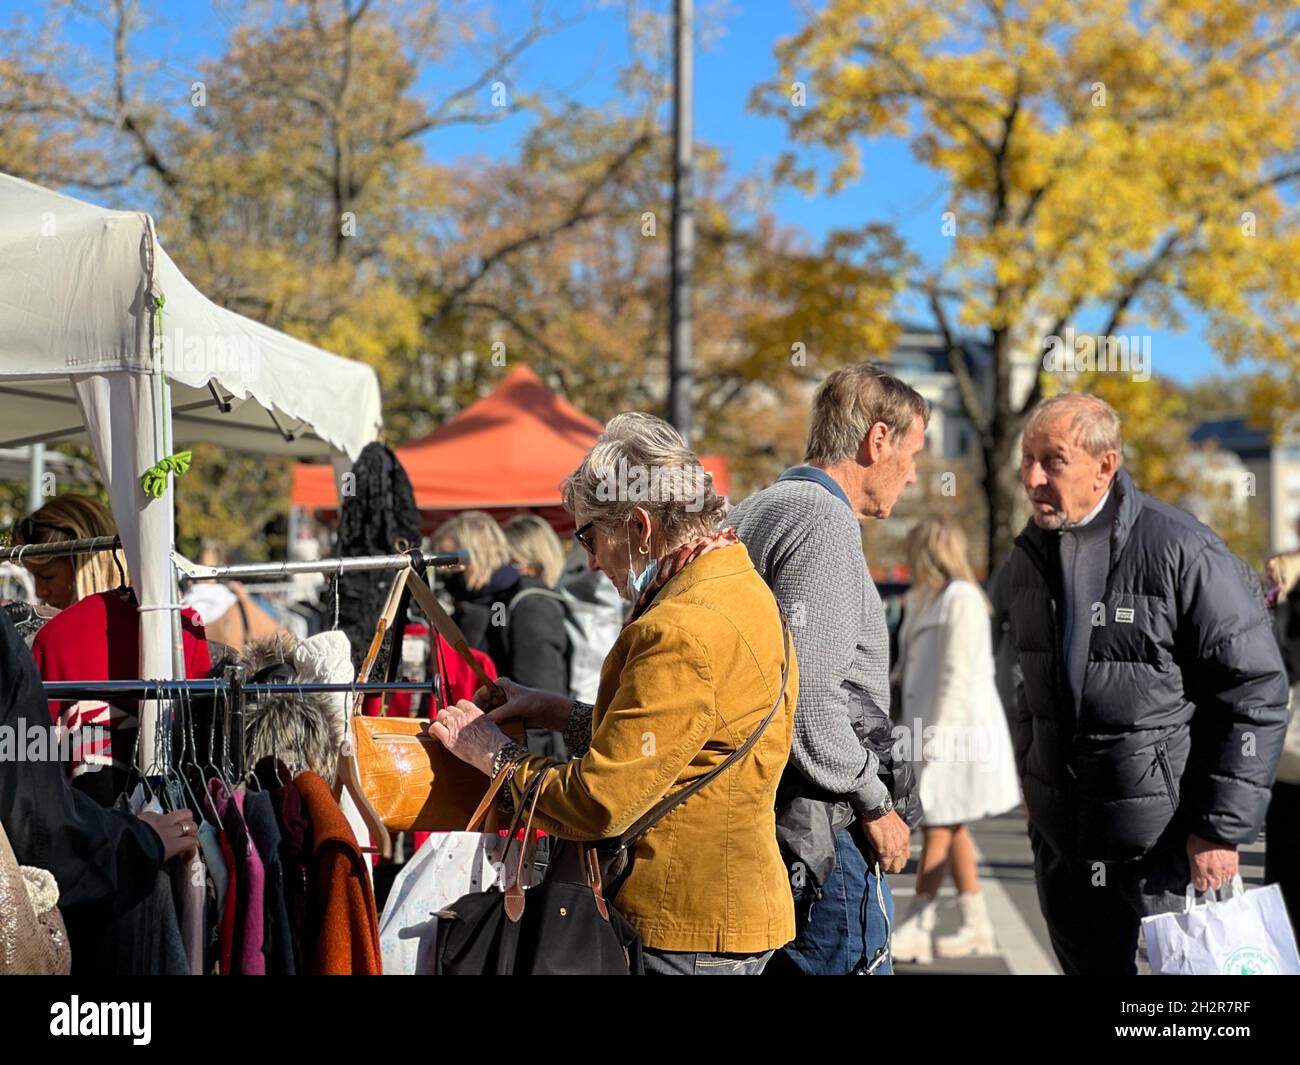 Menschen auf dem Flohmarkt in Zürich am Samstag im Oktober. Eine Frau inspiziert eine Tasche und zwei Männer sprechen zusammen. Pople und Marktstände. Stockfoto